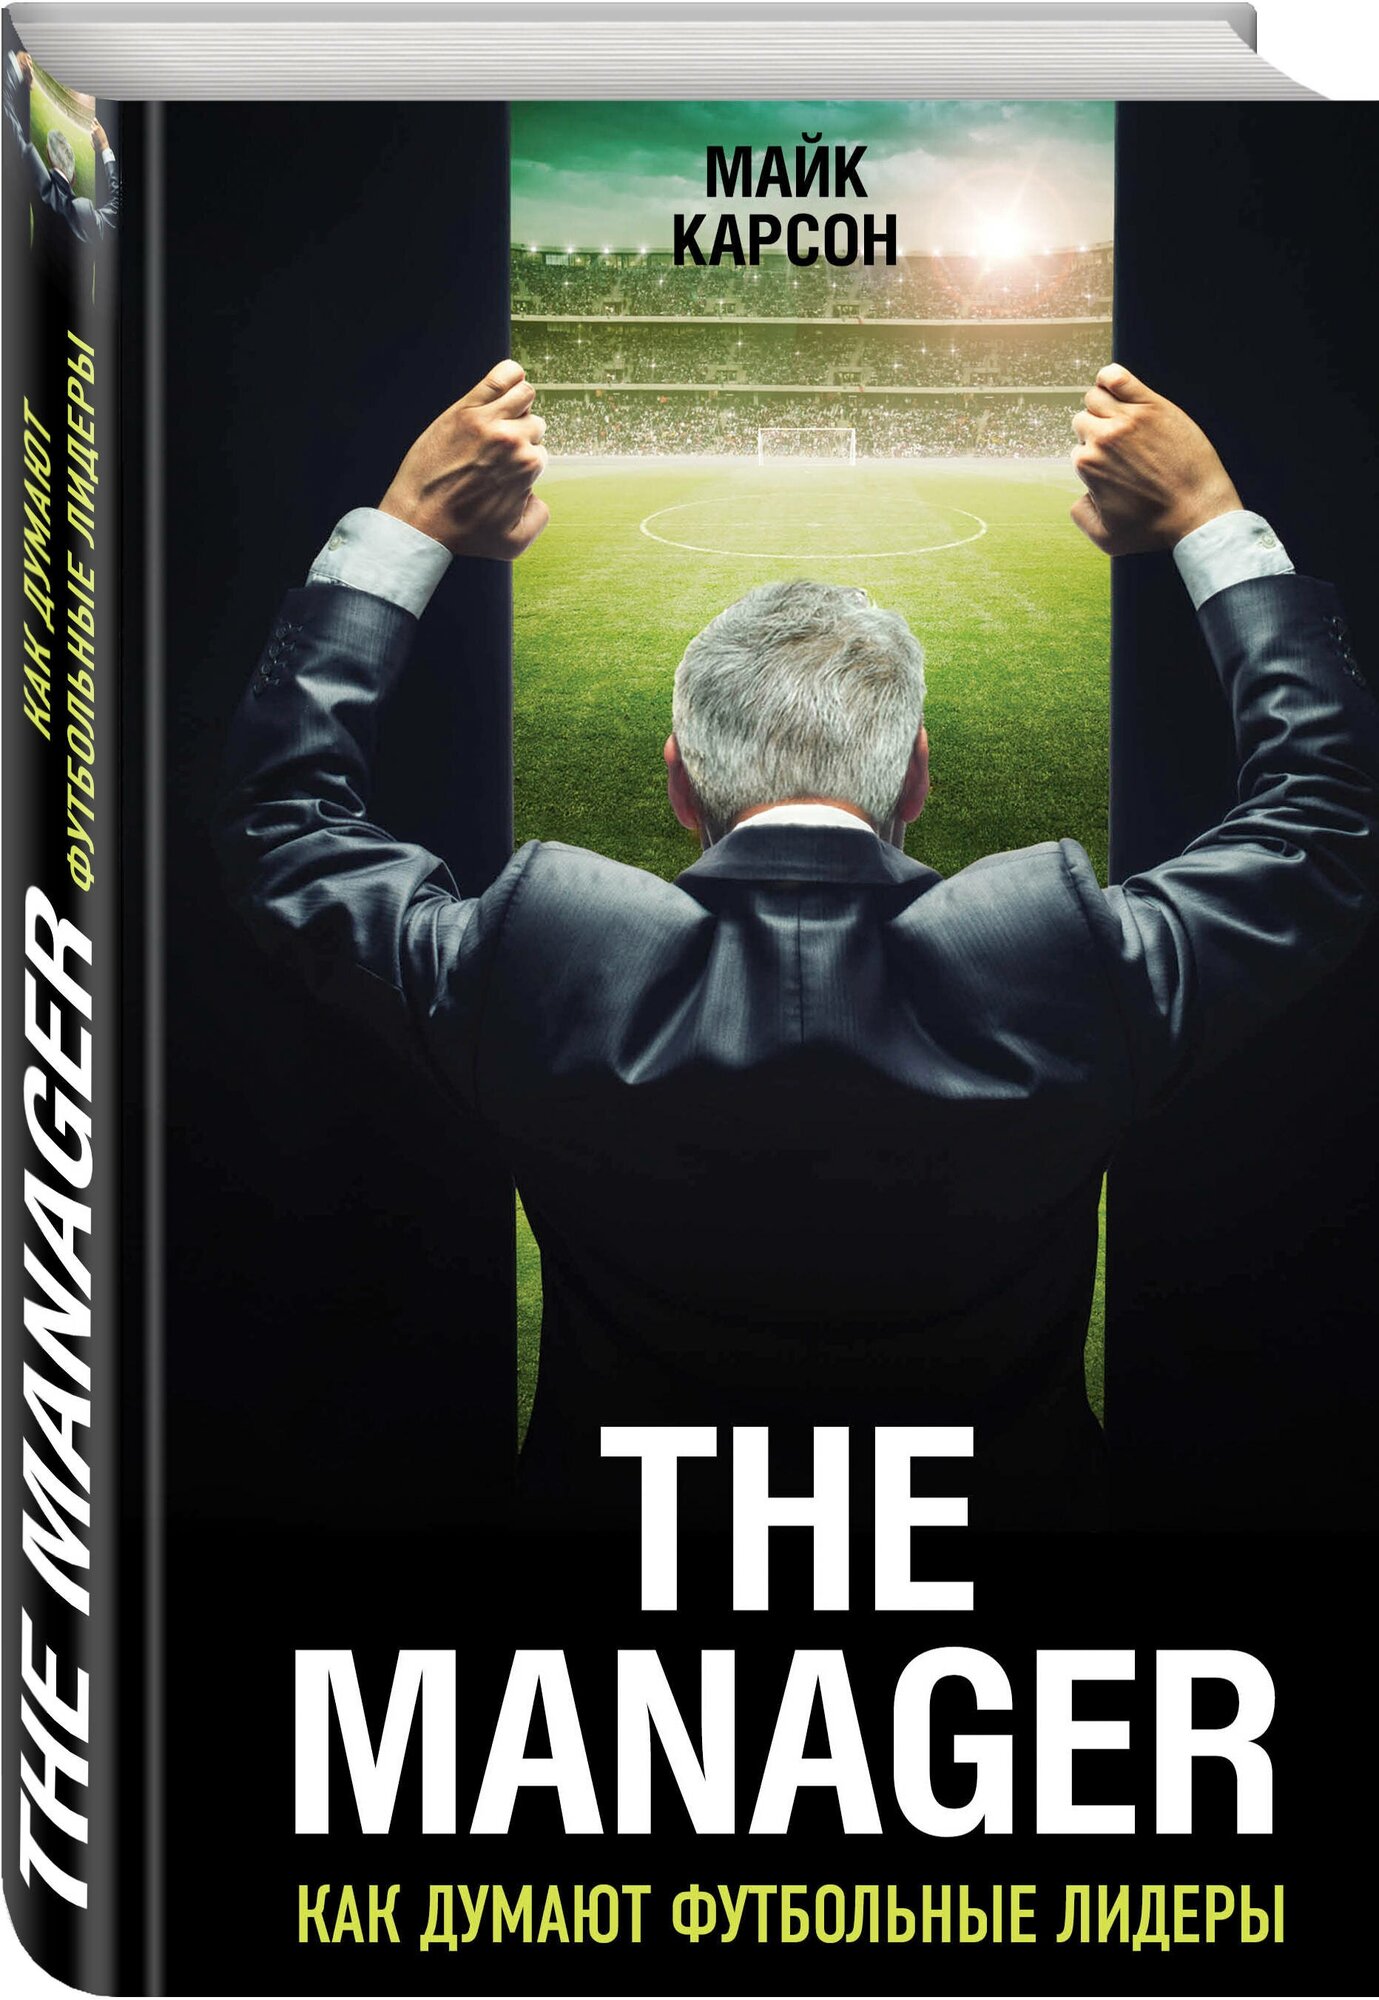 The Manager. Как думают футбольные лидеры - фото №1